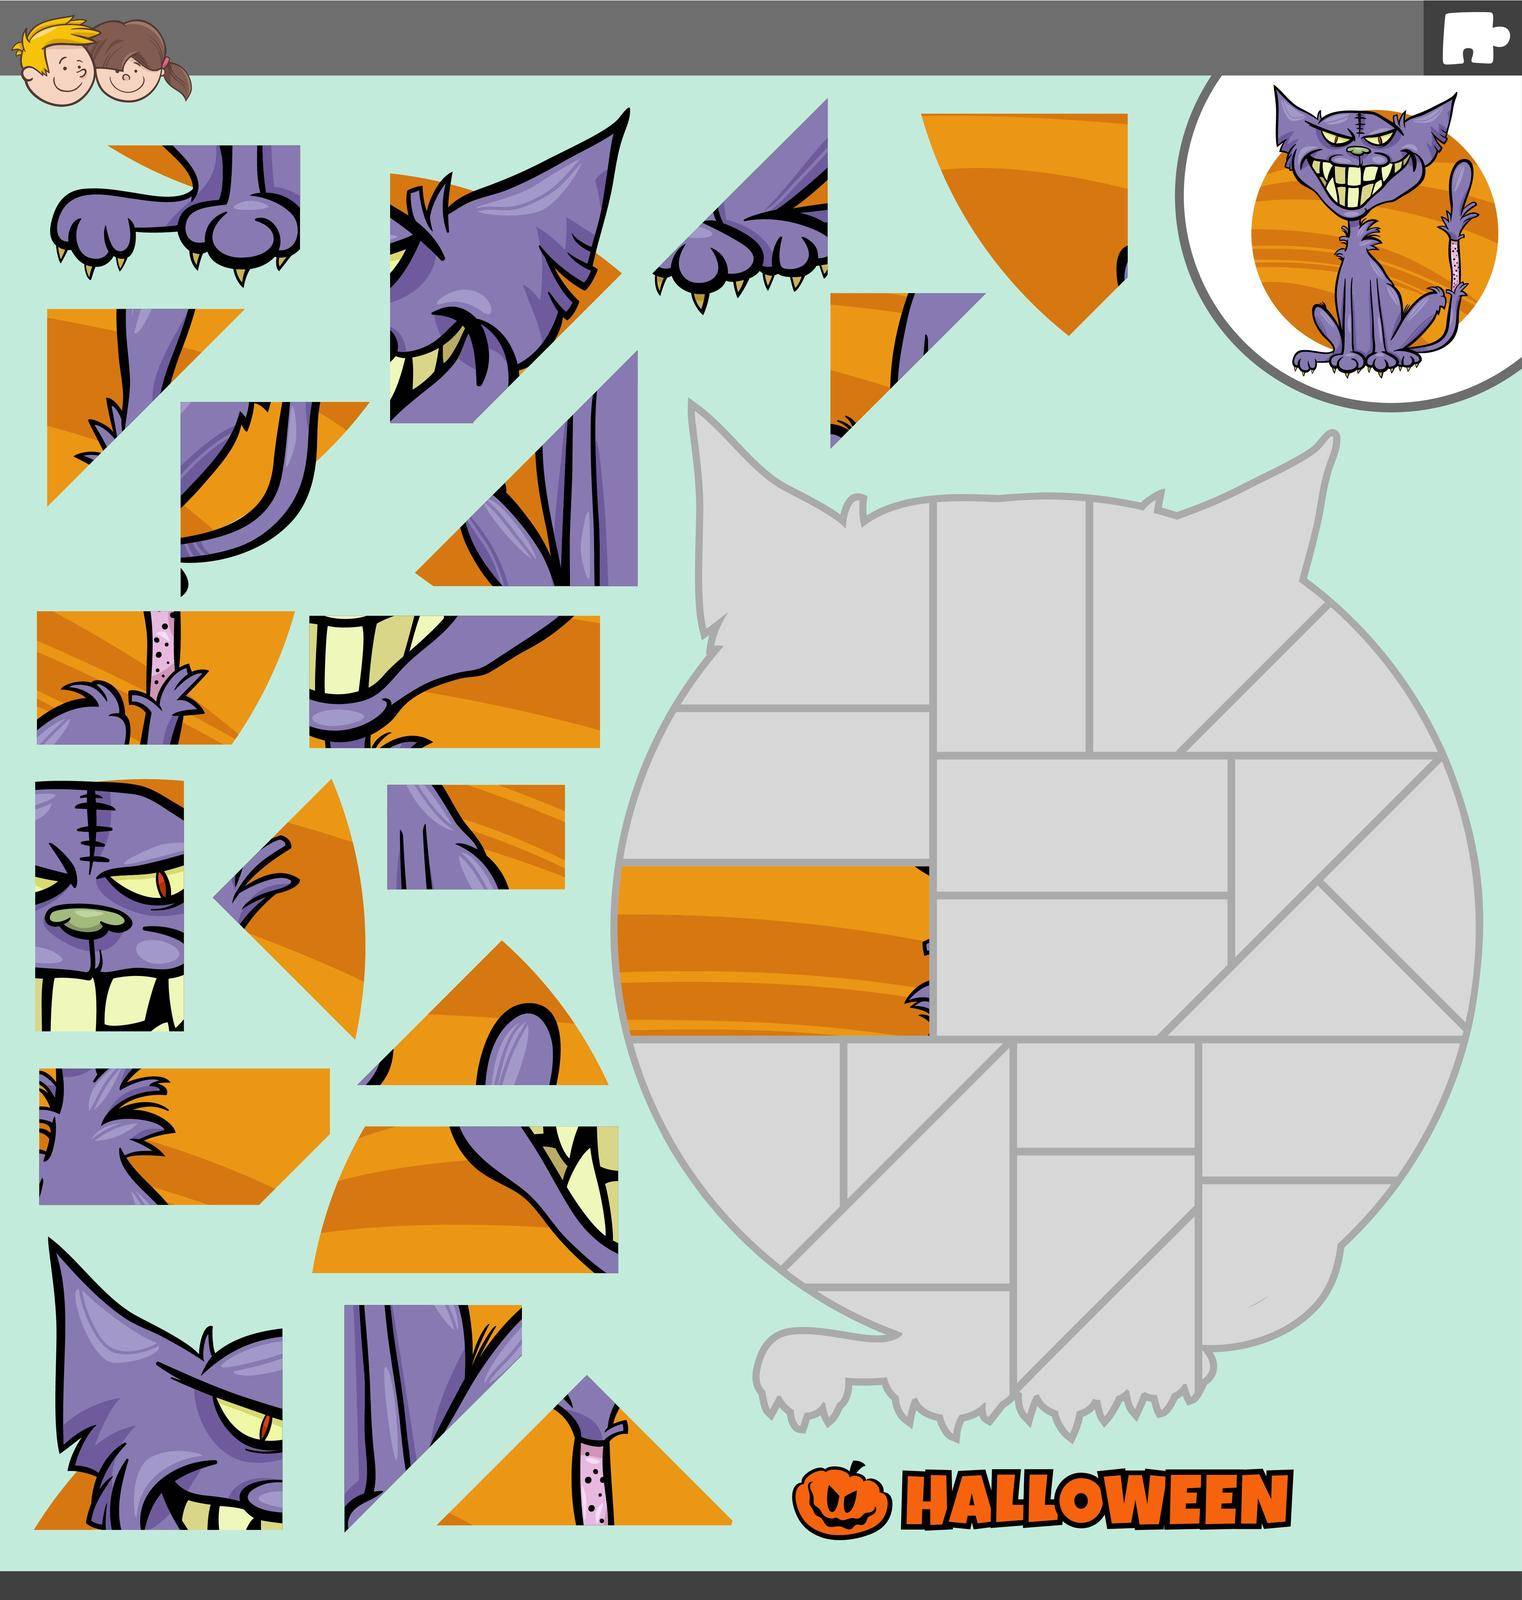 jigsaw puzzle with cartoon zombie cat on Halloween by izakowski